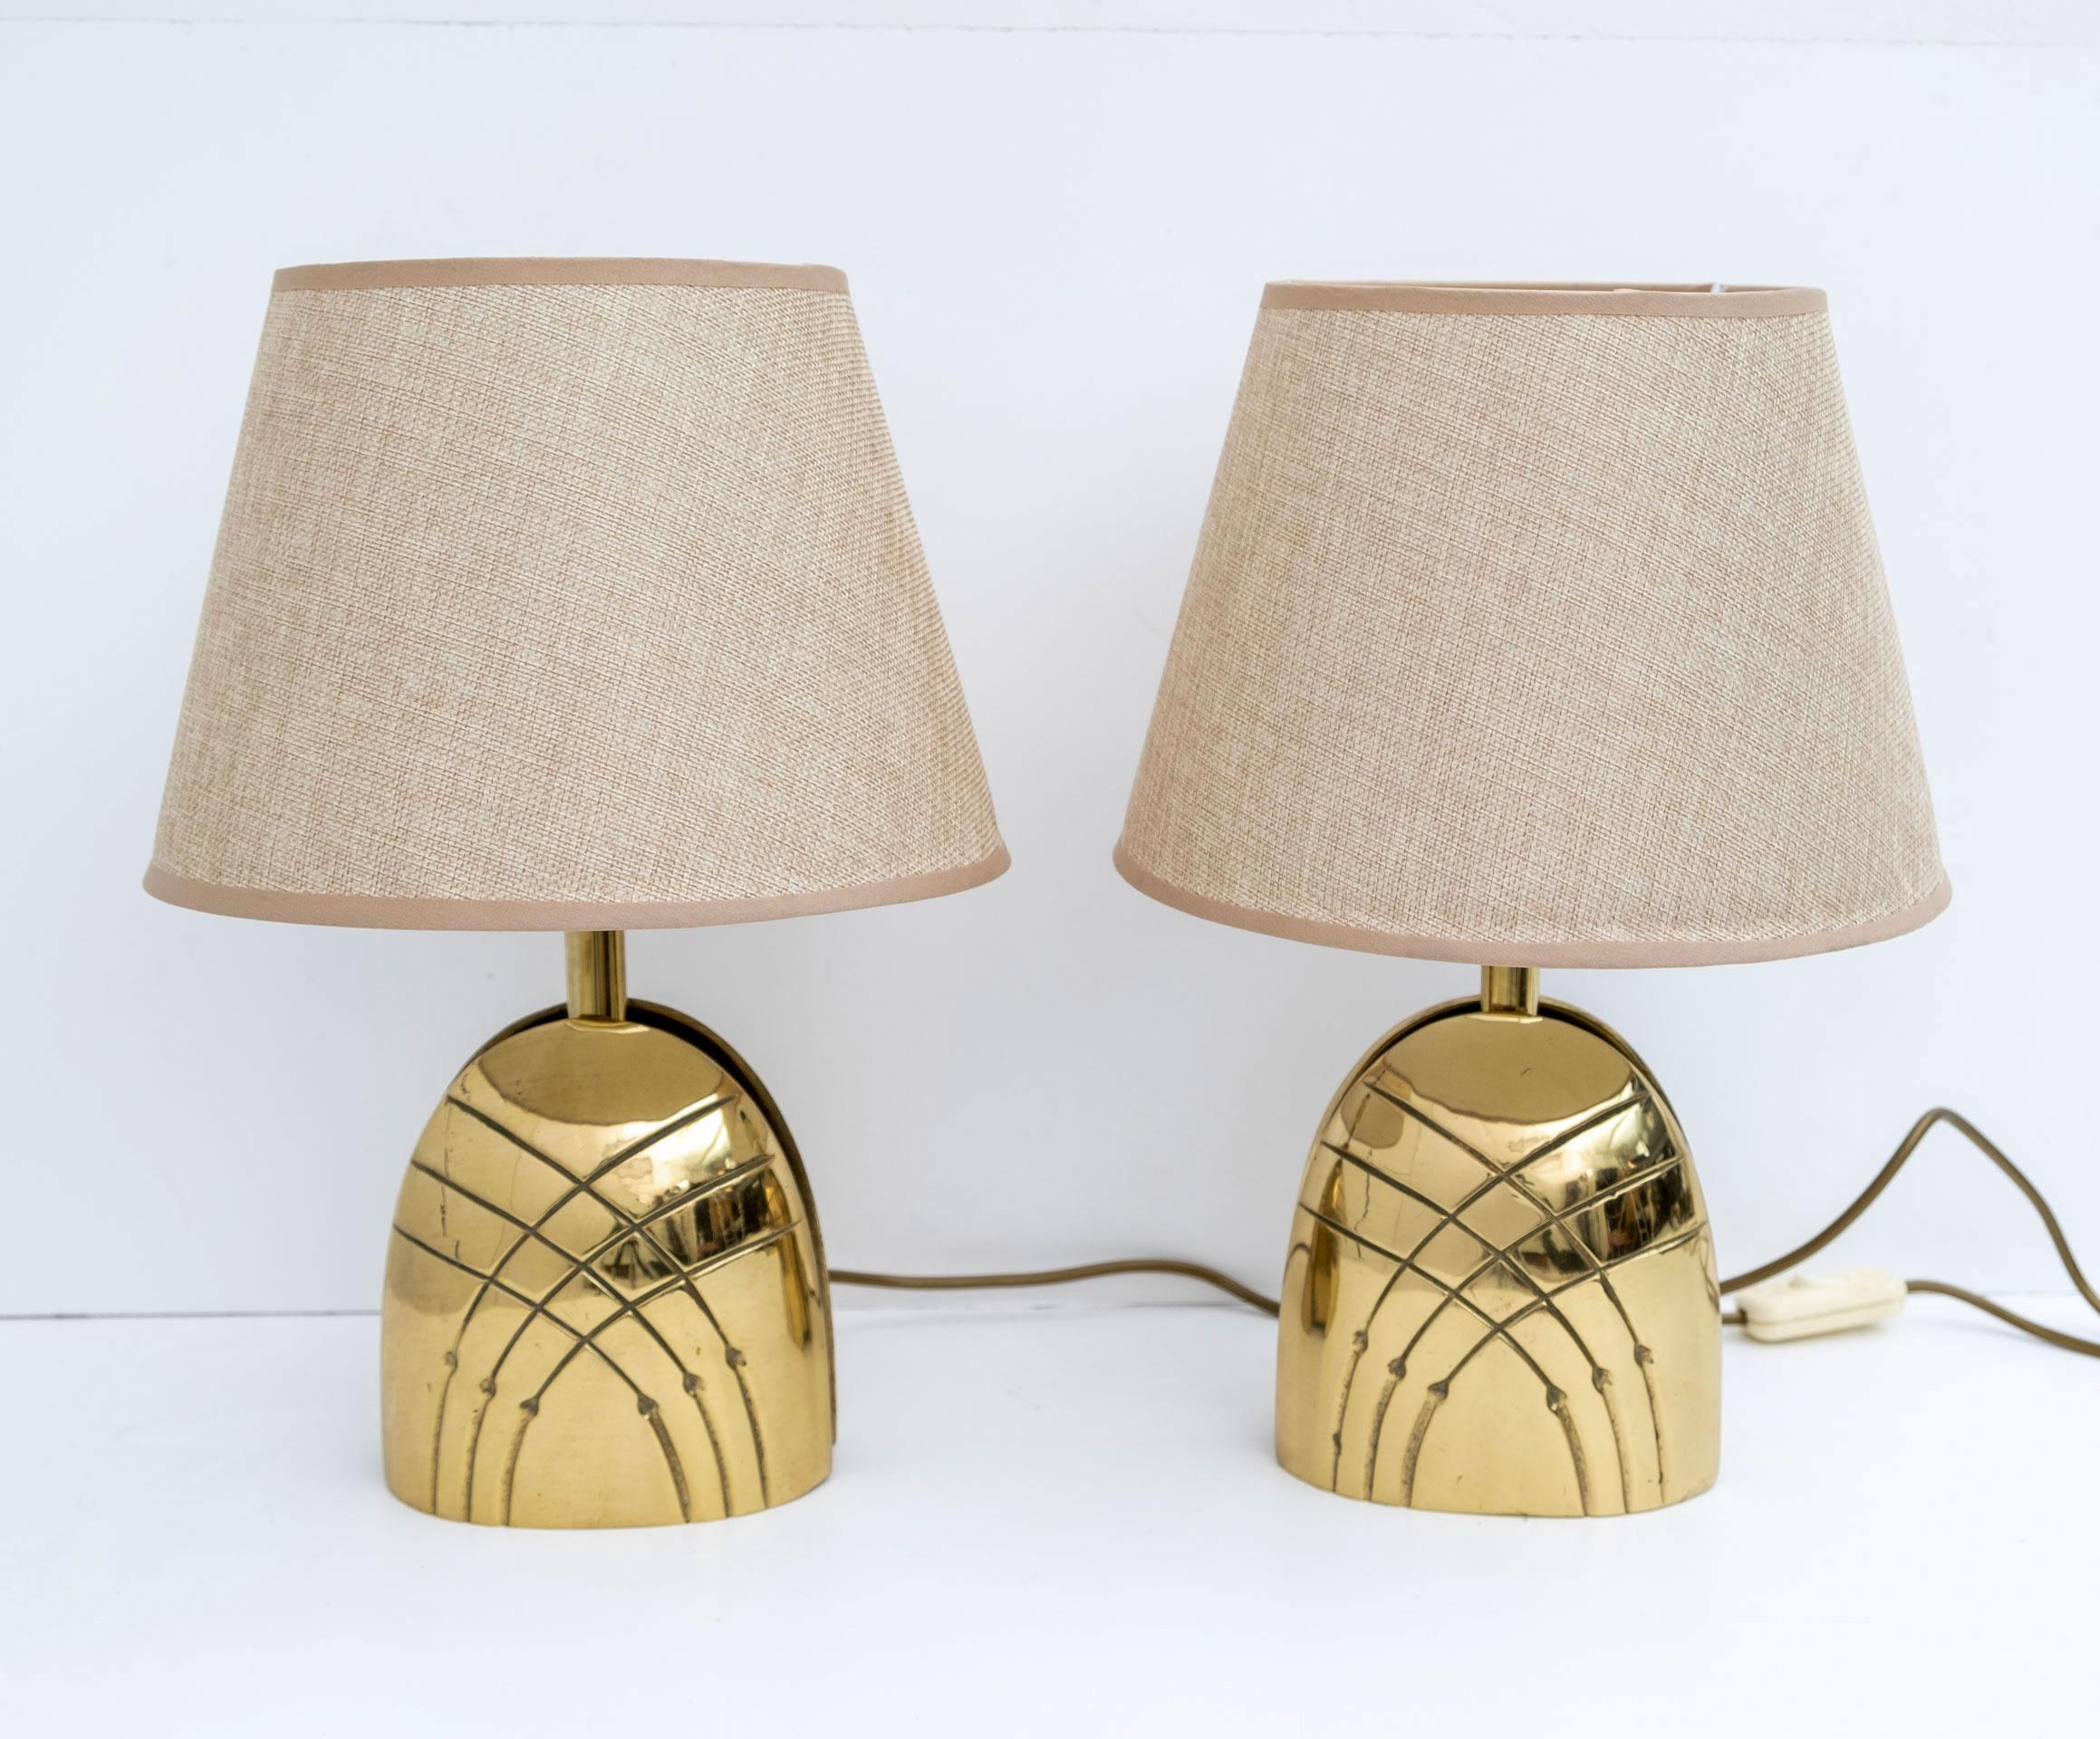 Belle paire de lampes de chevet, fabrication italienne des années 70. En laiton moulé, les bases mesurent cm : L14 x P9 x H23.